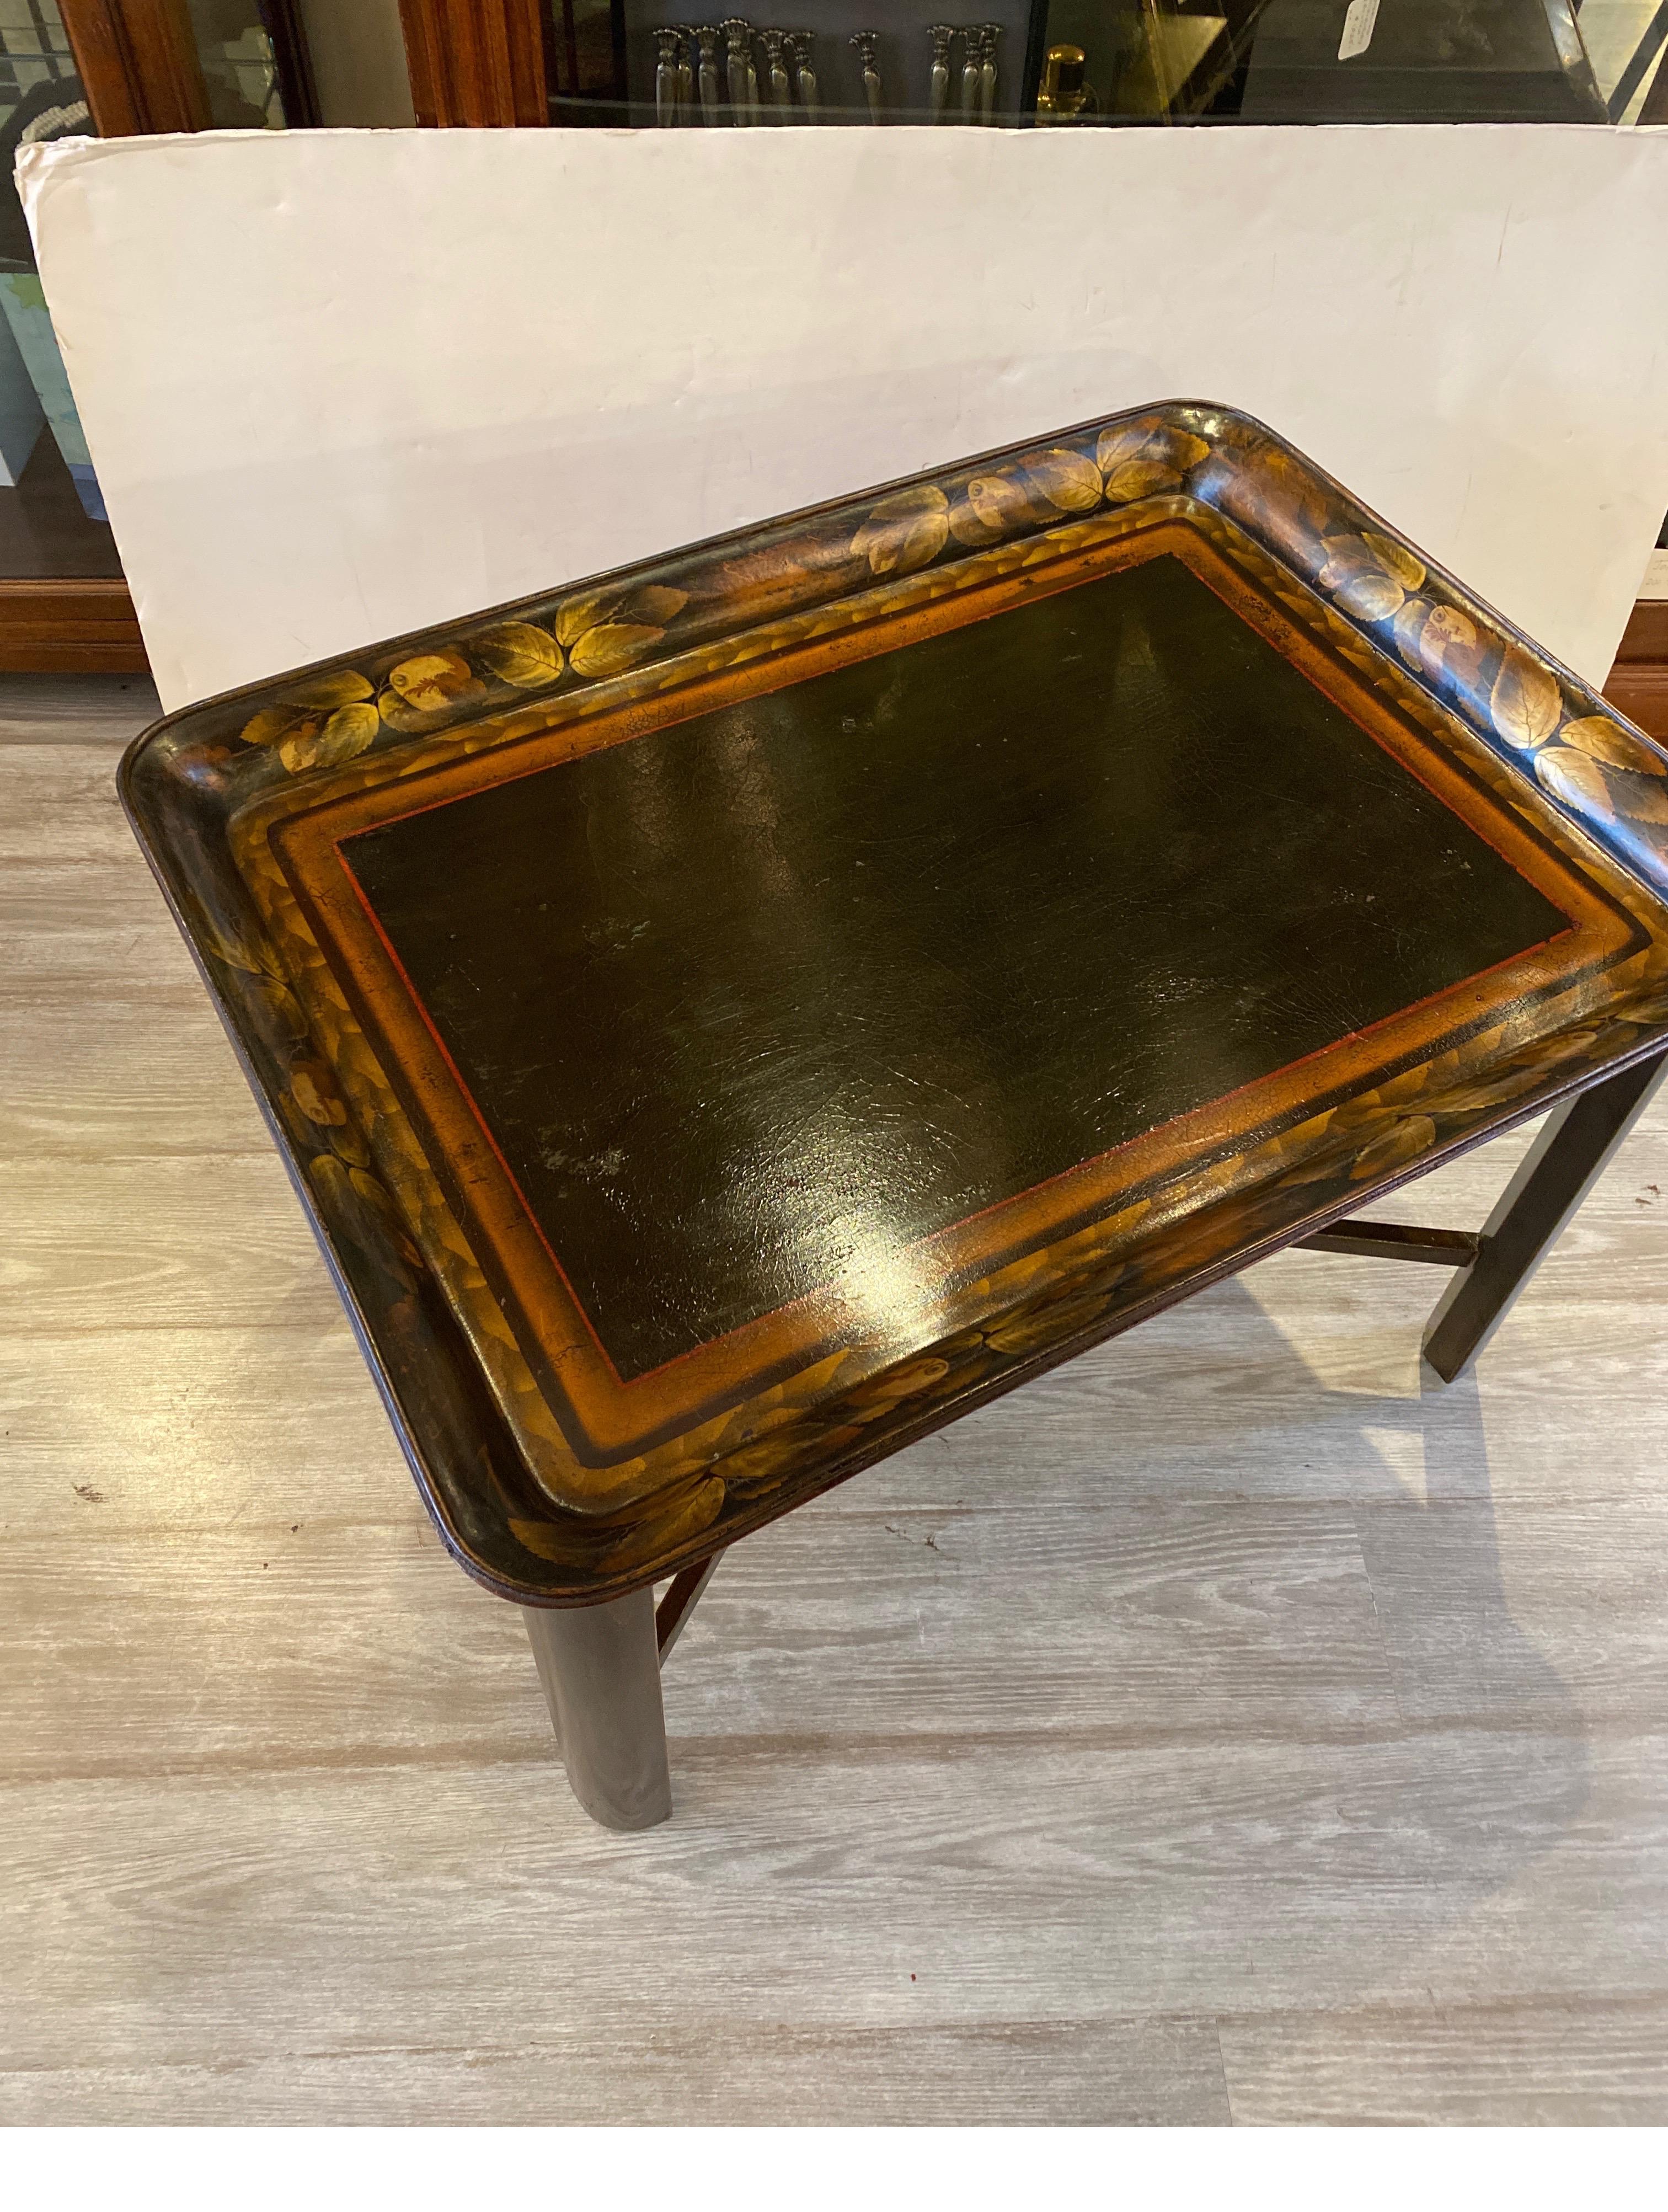 Un plateau en papier mâché des années 1870, doré et décoré, avec une base en bois foncé personnalisée plus tard. La table à plateau avec le plateau s'insérant dans la base personnalisée. Peut être retiré et utilisé pour le service.